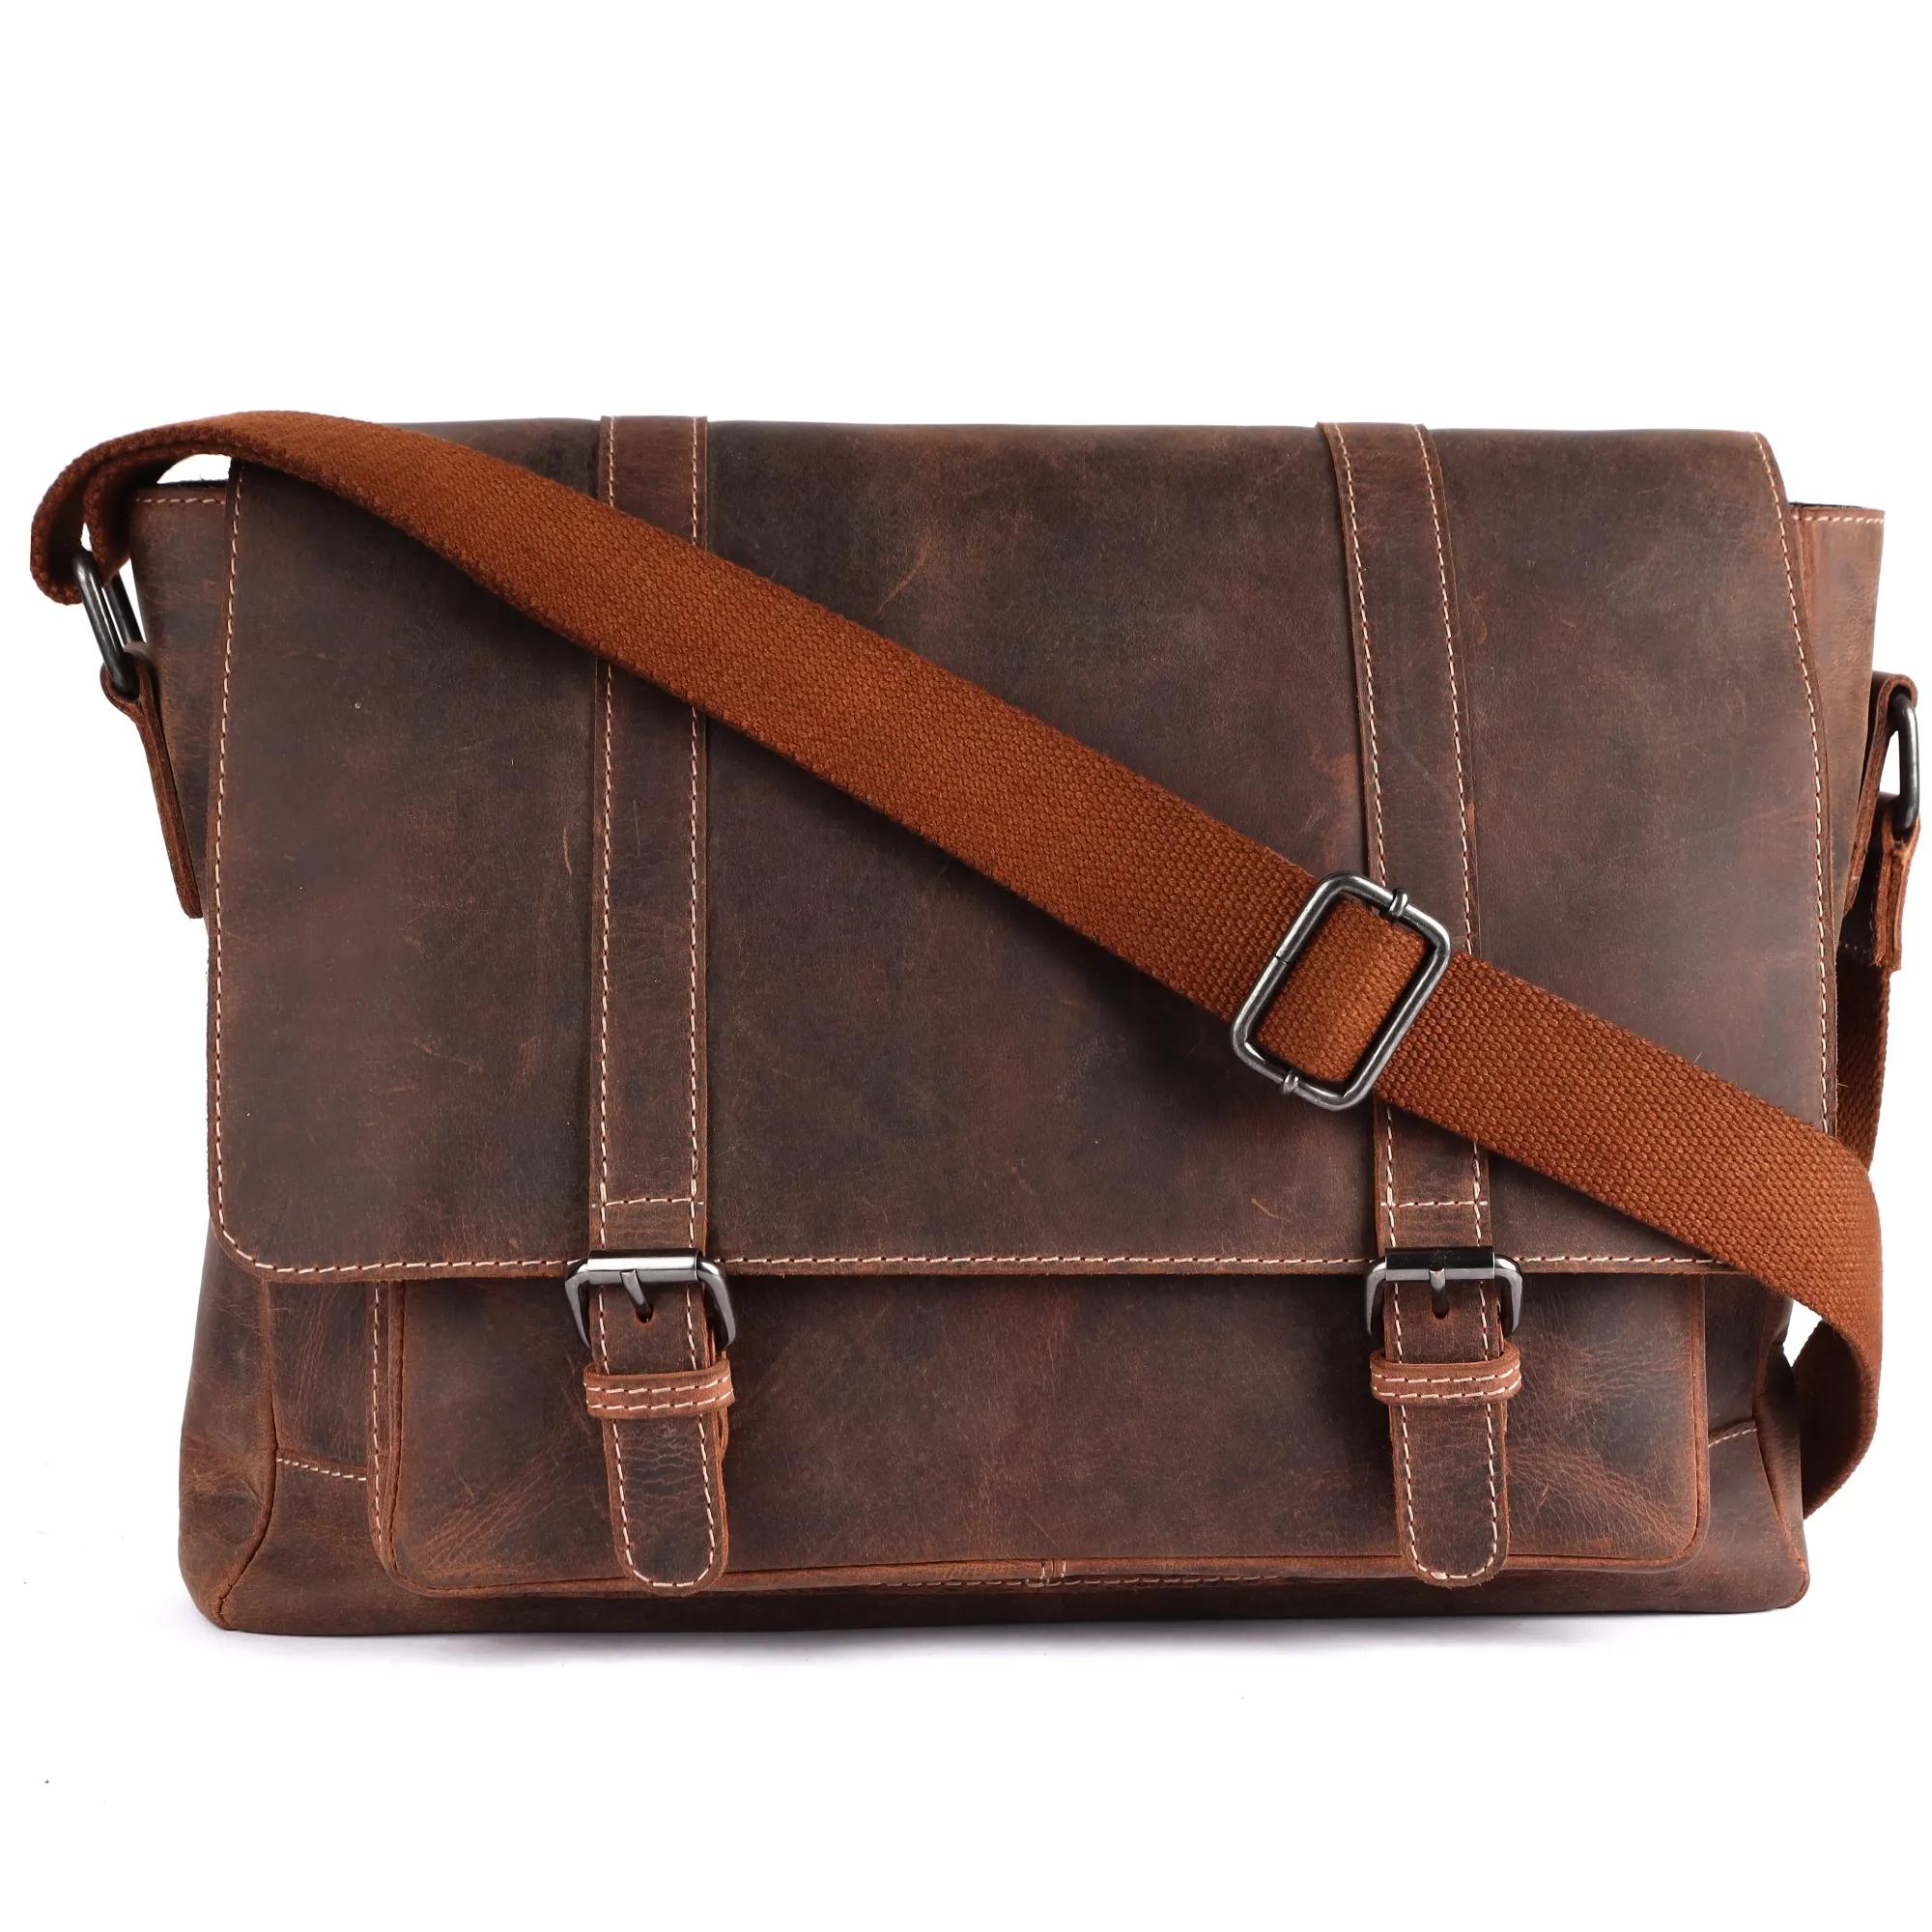 Hunter Leather Formal Office Laptop Bag for Men Trendy Custom Laptop Business Briefcase Bag Messenger Shoulder Bag with Strap